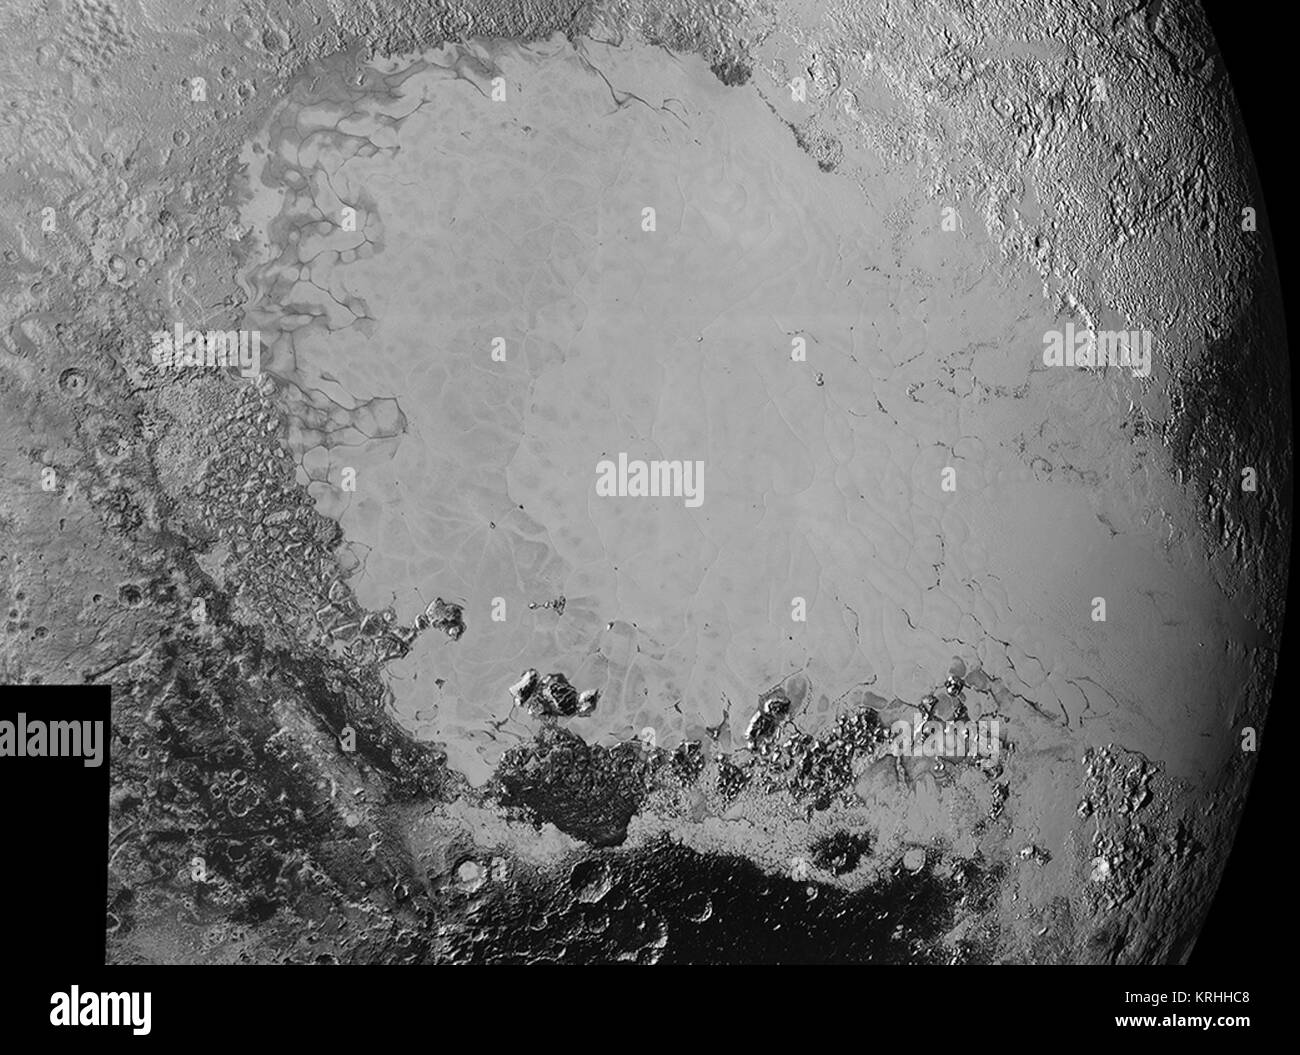 Mosaico di immagini ad alta risoluzione di Plutone, inviato dalla NASA nuovi orizzonti un veicolo spaziale da sett. Da 5 a 7, 2015. L'immagine è dominata dalla informalmente-denominato pianura ghiacciata Sputnik Planum, liscio, regione luminosa attraverso il centro. Questa immagine dispone anche di una grande varietà di altri paesaggi che circondano Sputnik. Il più piccolo caratteristiche visibili sono 0,5 miglia (0,8 km) nel formato e il mosaico copre una regione di circa 1000 miglia (1600 chilometri) largo. L'immagine è stata presa come nuovi orizzonti è volato oltre Plutone il 14 luglio 2015, da una distanza di 50.000 miglia (80.000 chilometri). Credits: la NASA Foto Stock